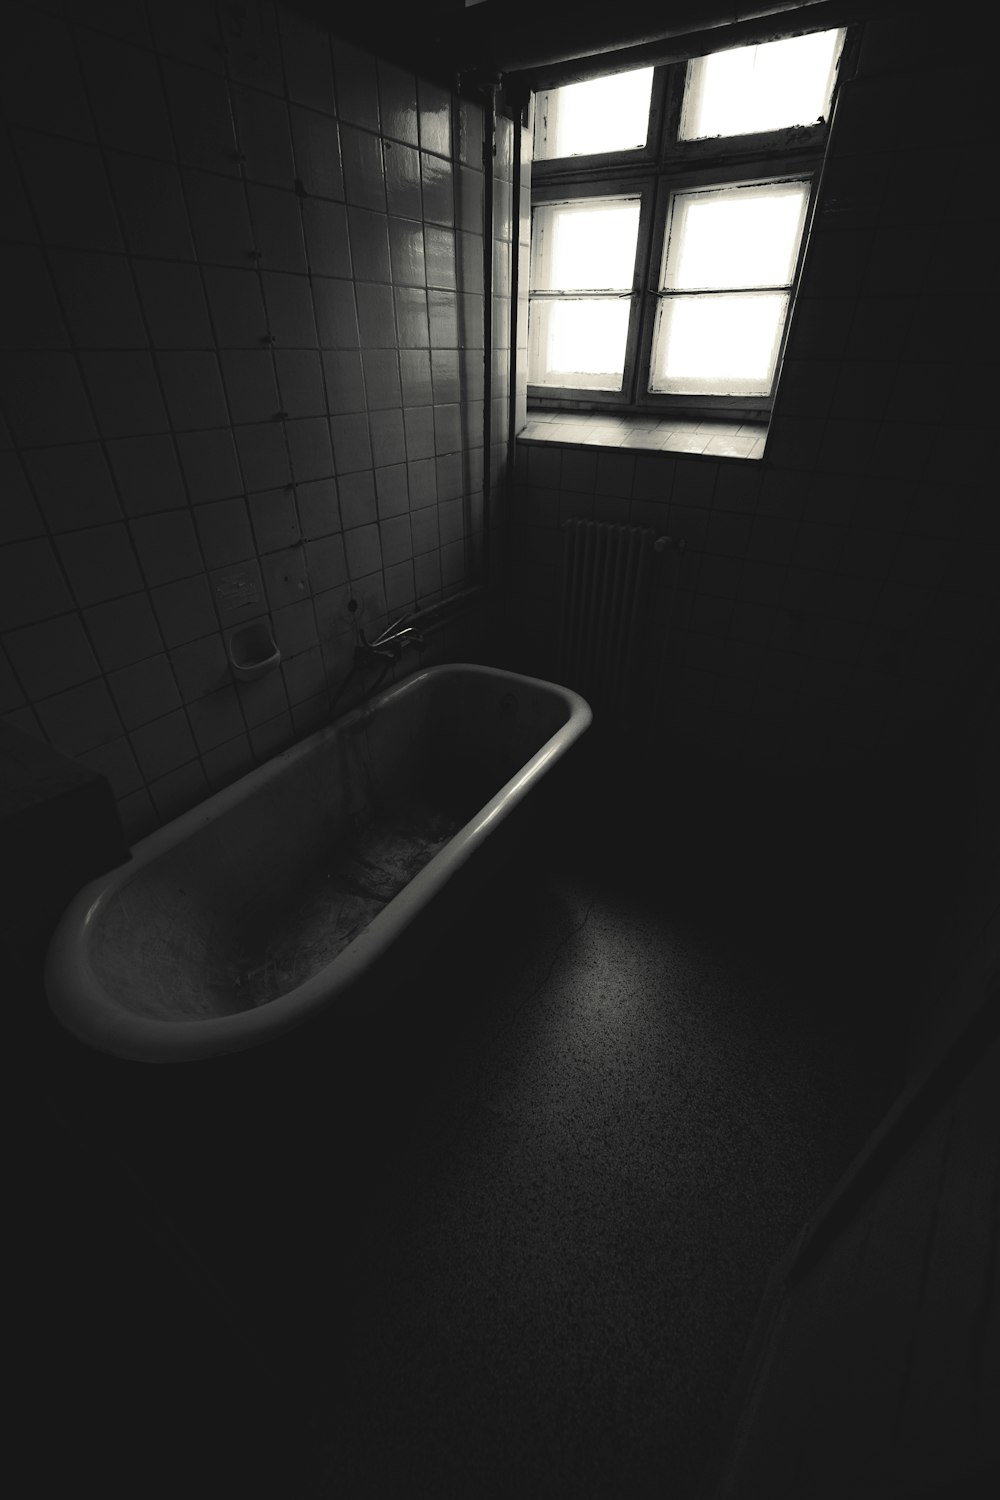 a bath tub sitting in a bathroom next to a window